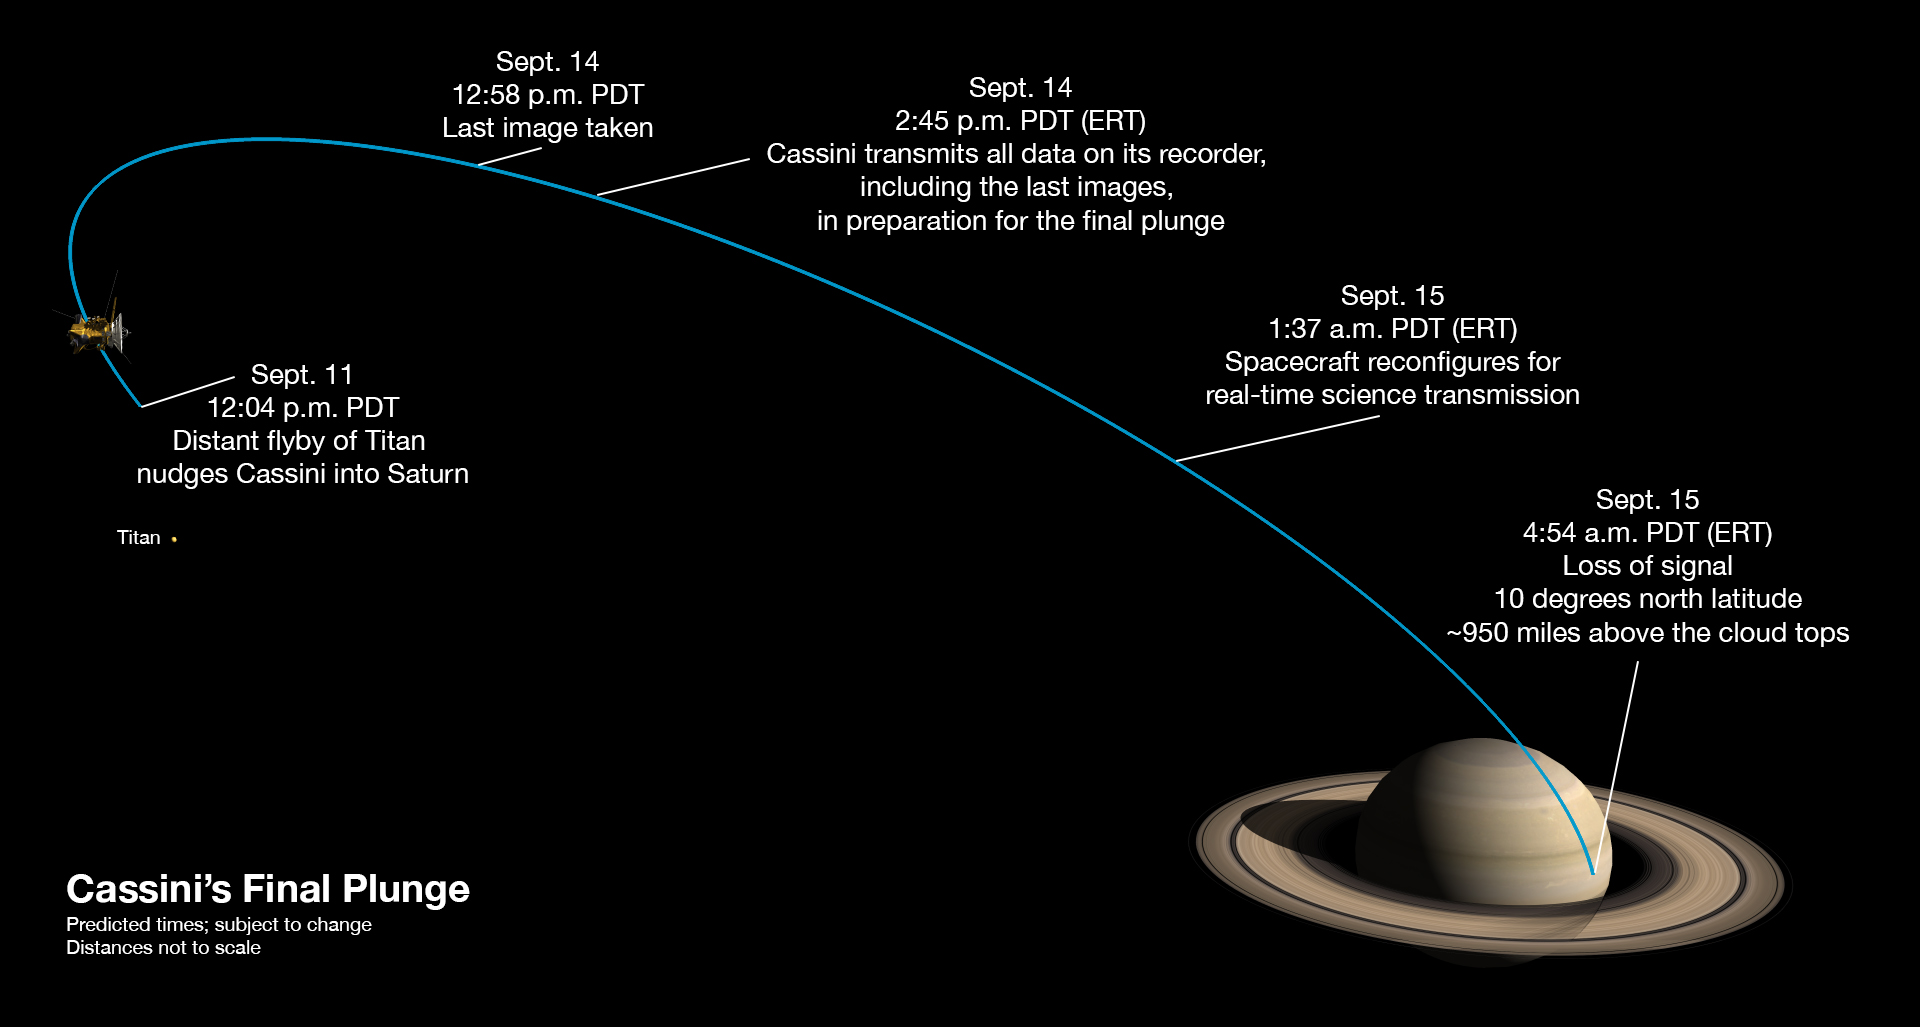 Posledný týzdeň sondy Cassini. Časy sú v PDT (pacifický letný čas). Ak chcete čas v LSEČ, prirátajte 9 hodín. Časy sú orientačné, môžu sa zmeniť podľa aktuálnej situácie.